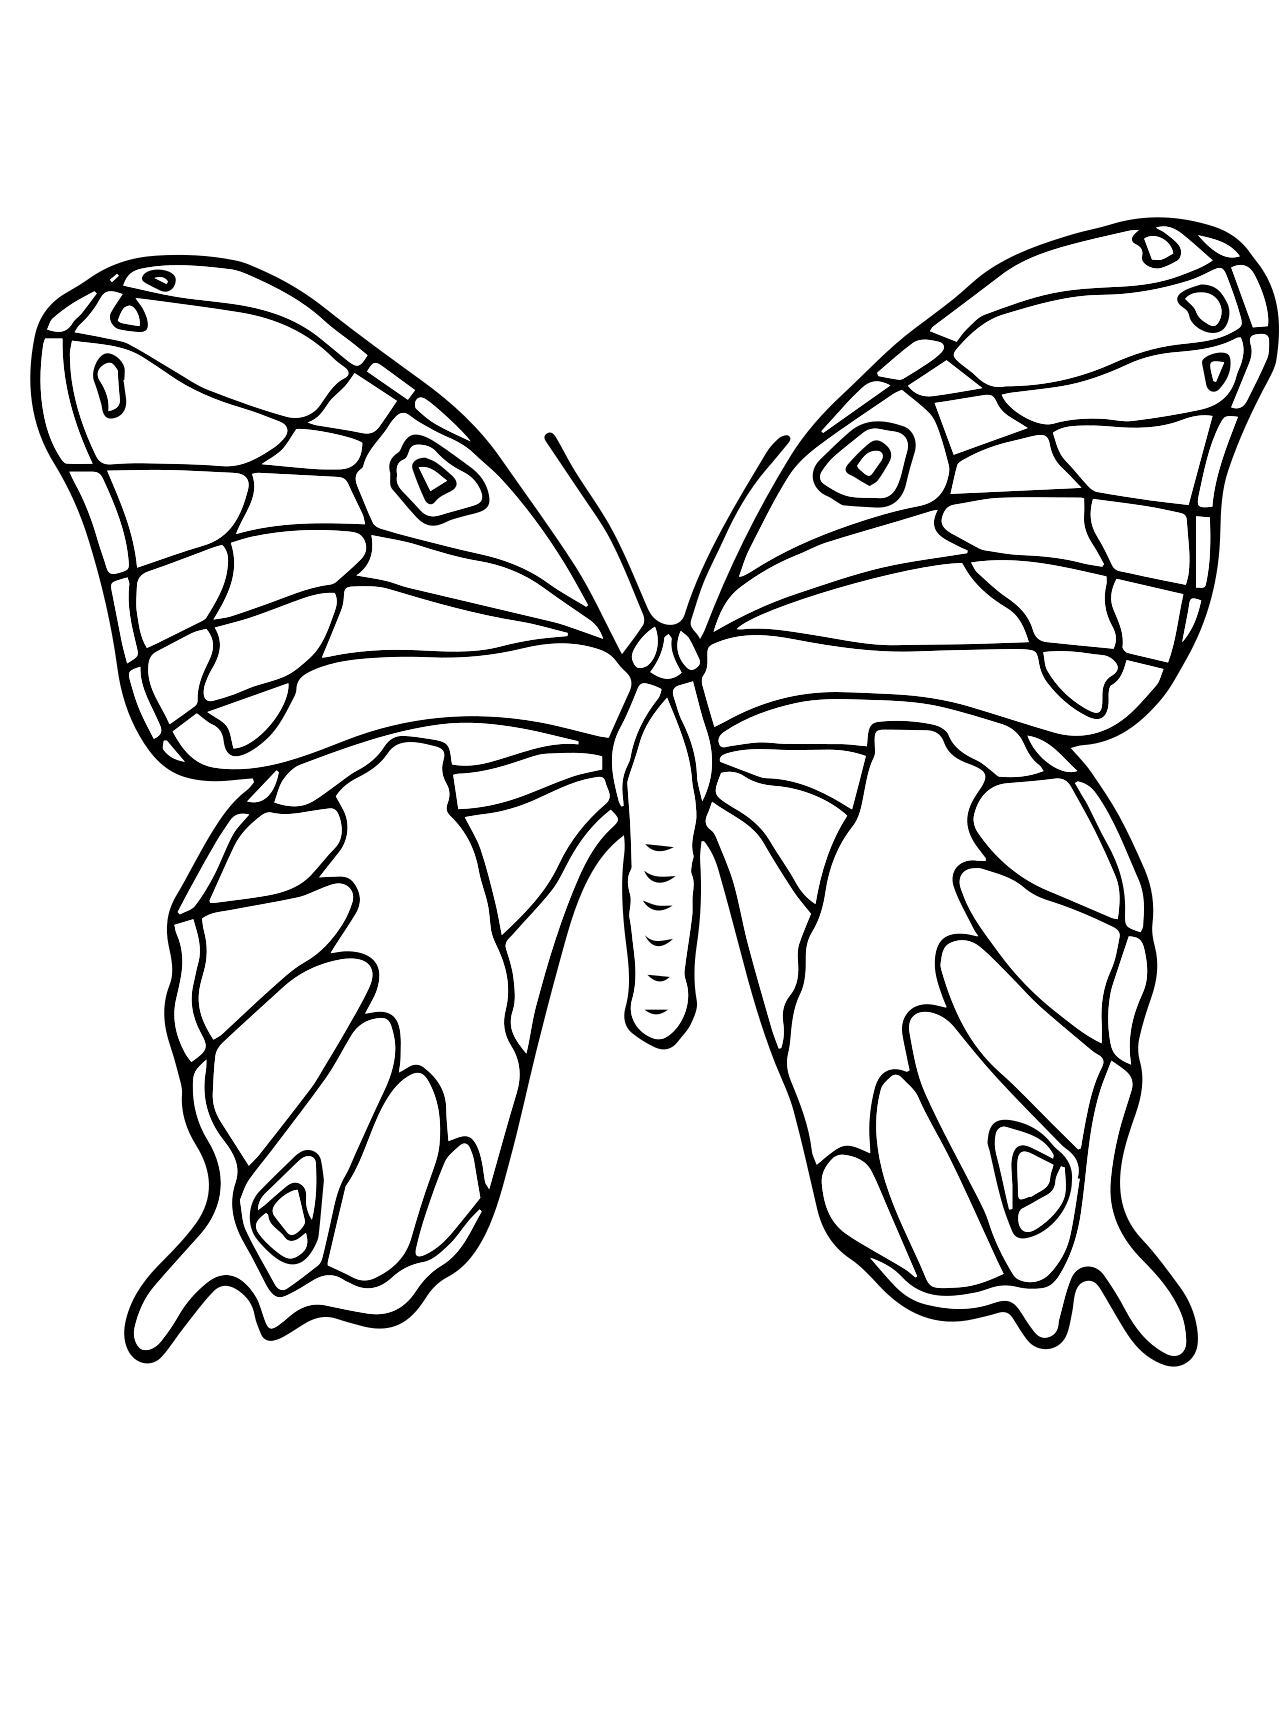 Раскраска 2 бабочки. Раскраска "бабочки". Бабочка раскраска для детей. Бабочка раскраска для малышей. Рисунок бабочки для раскрашивания.